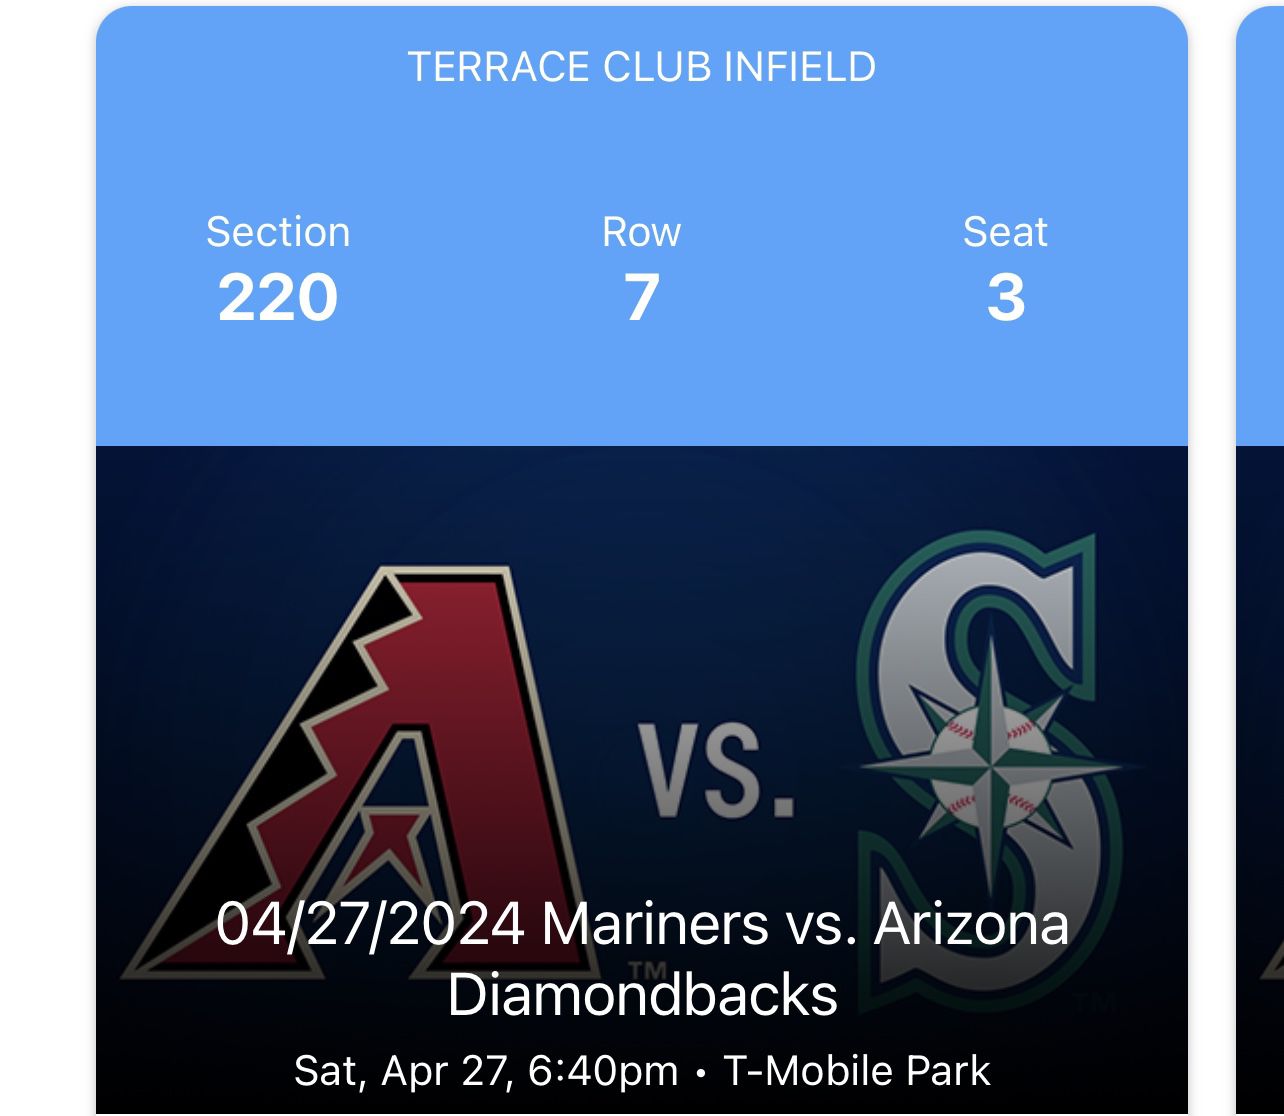 Seattle Mariners Tickets Infield Terrace Club Saturday 4/27 vs Diamondbacks